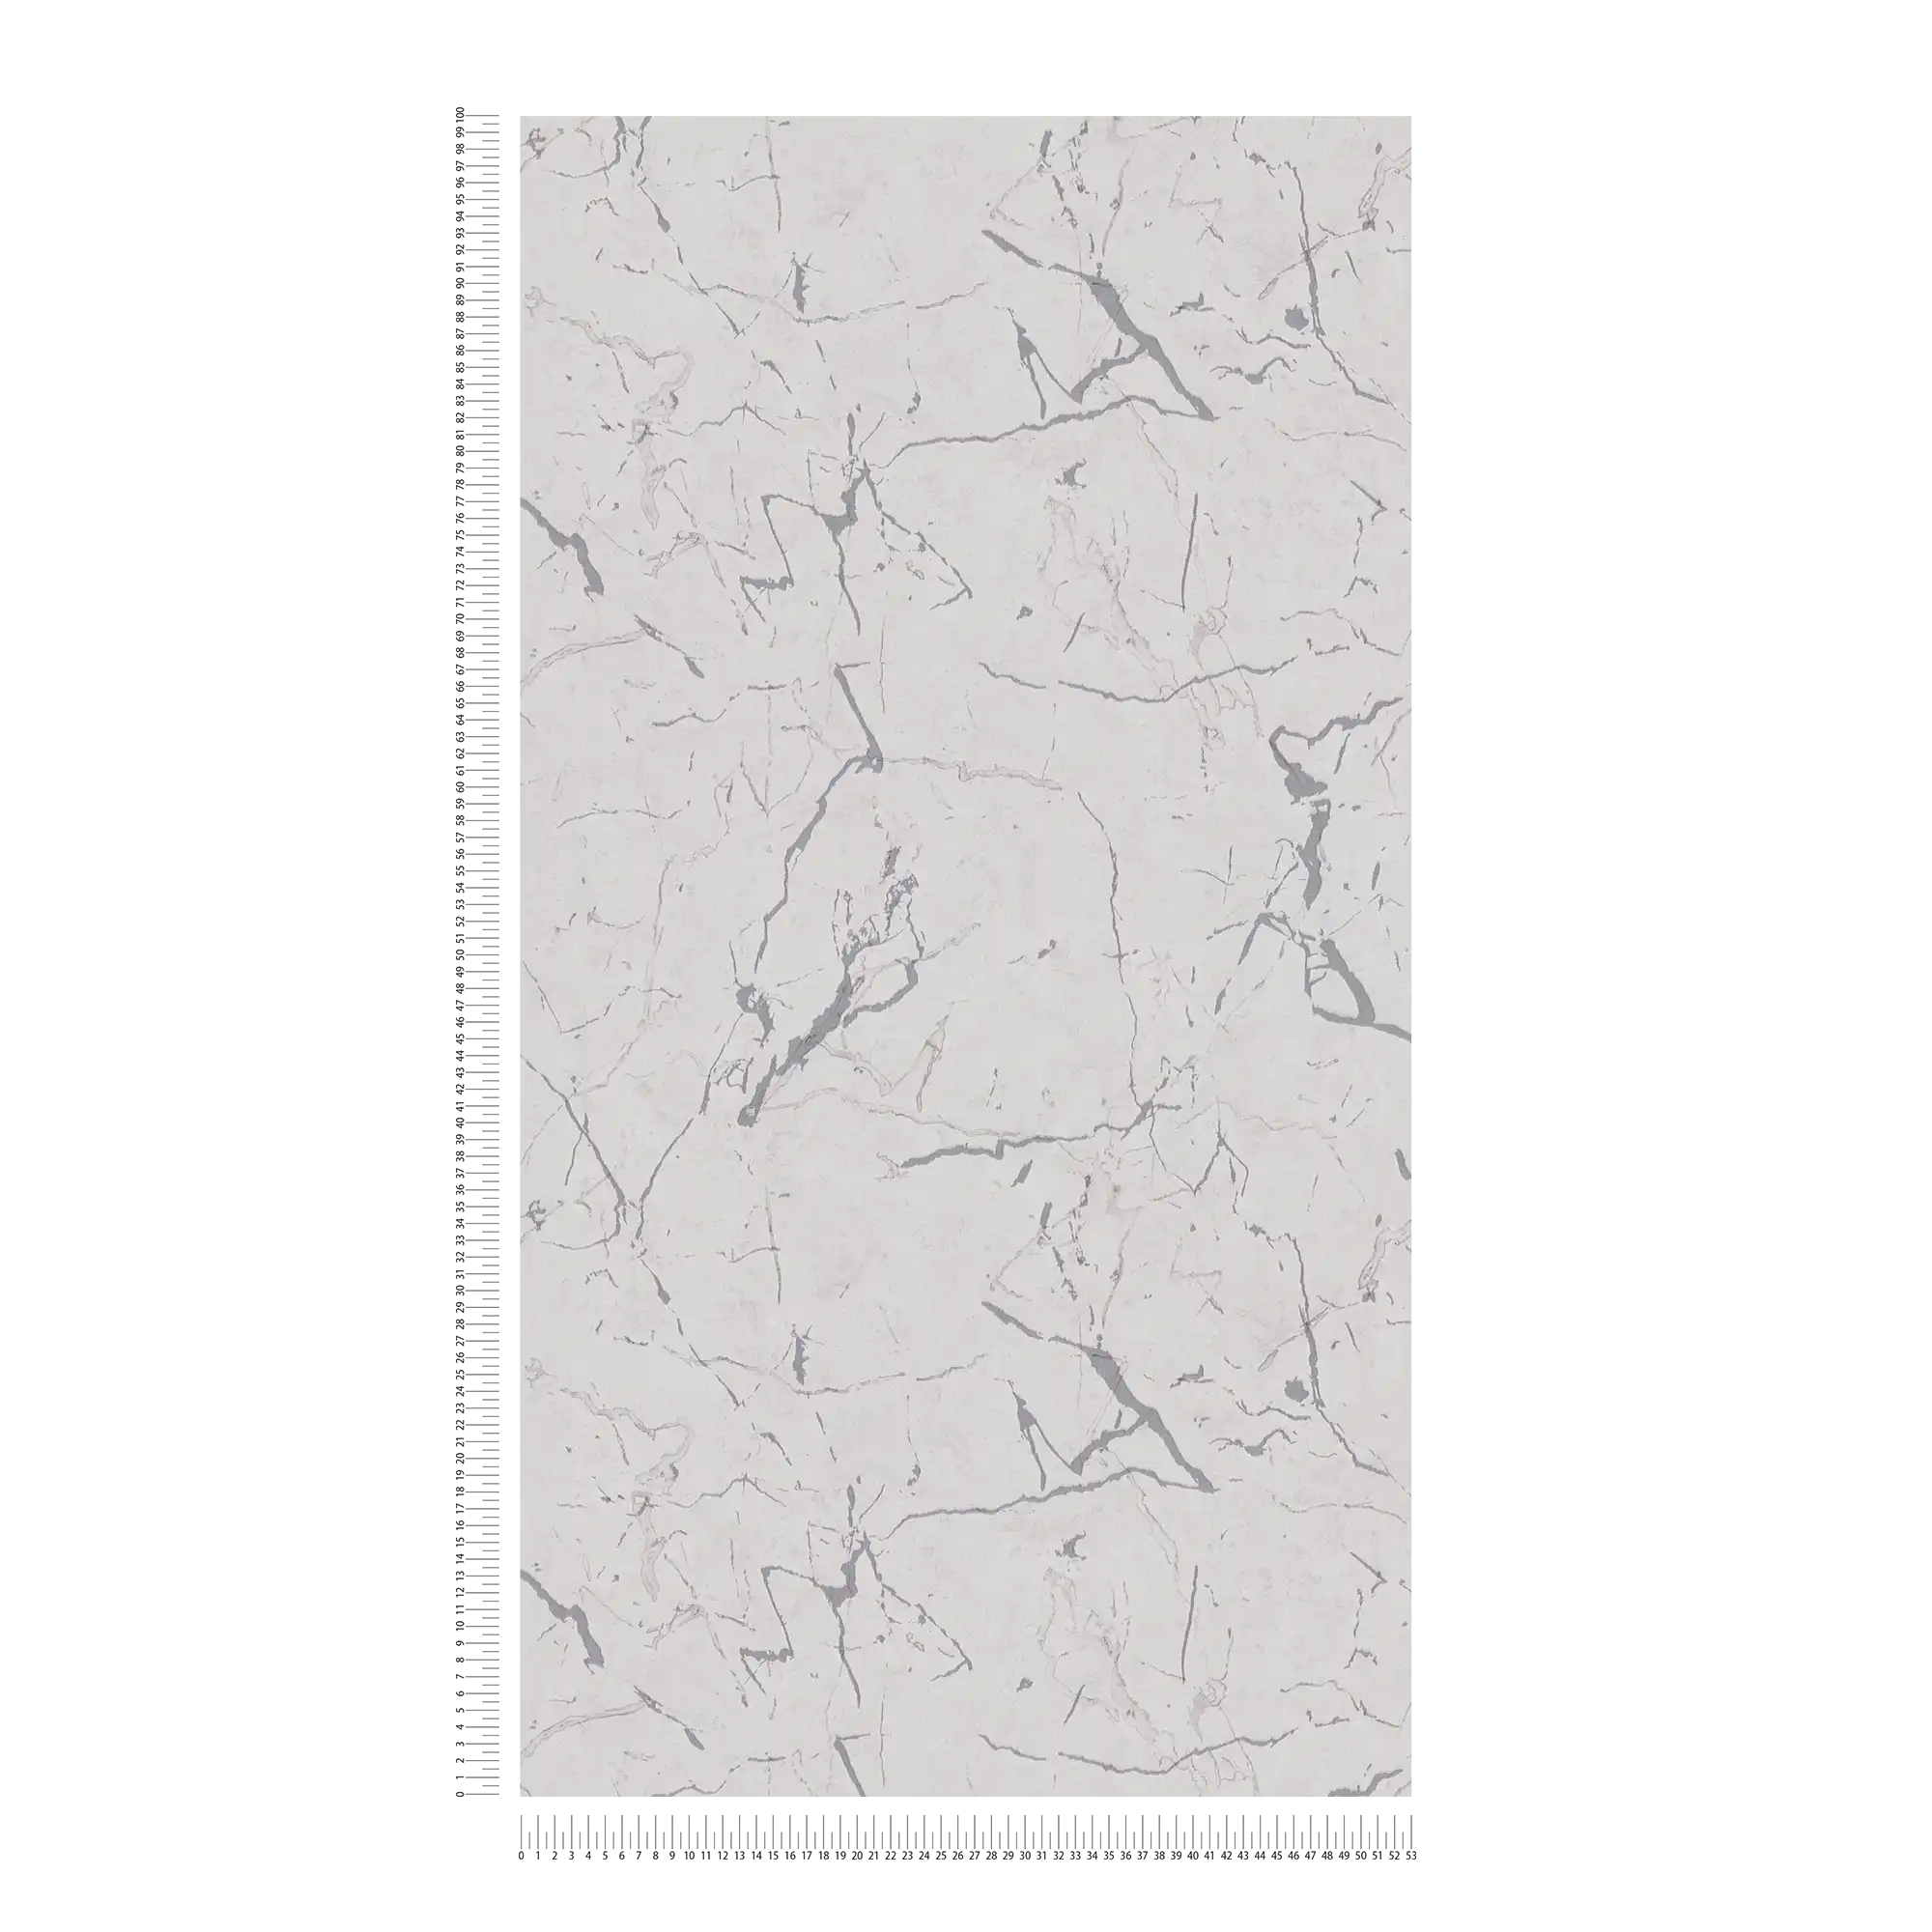             Papier peint marbre avec effet brillant argenté - gris, métallique, blanc
        